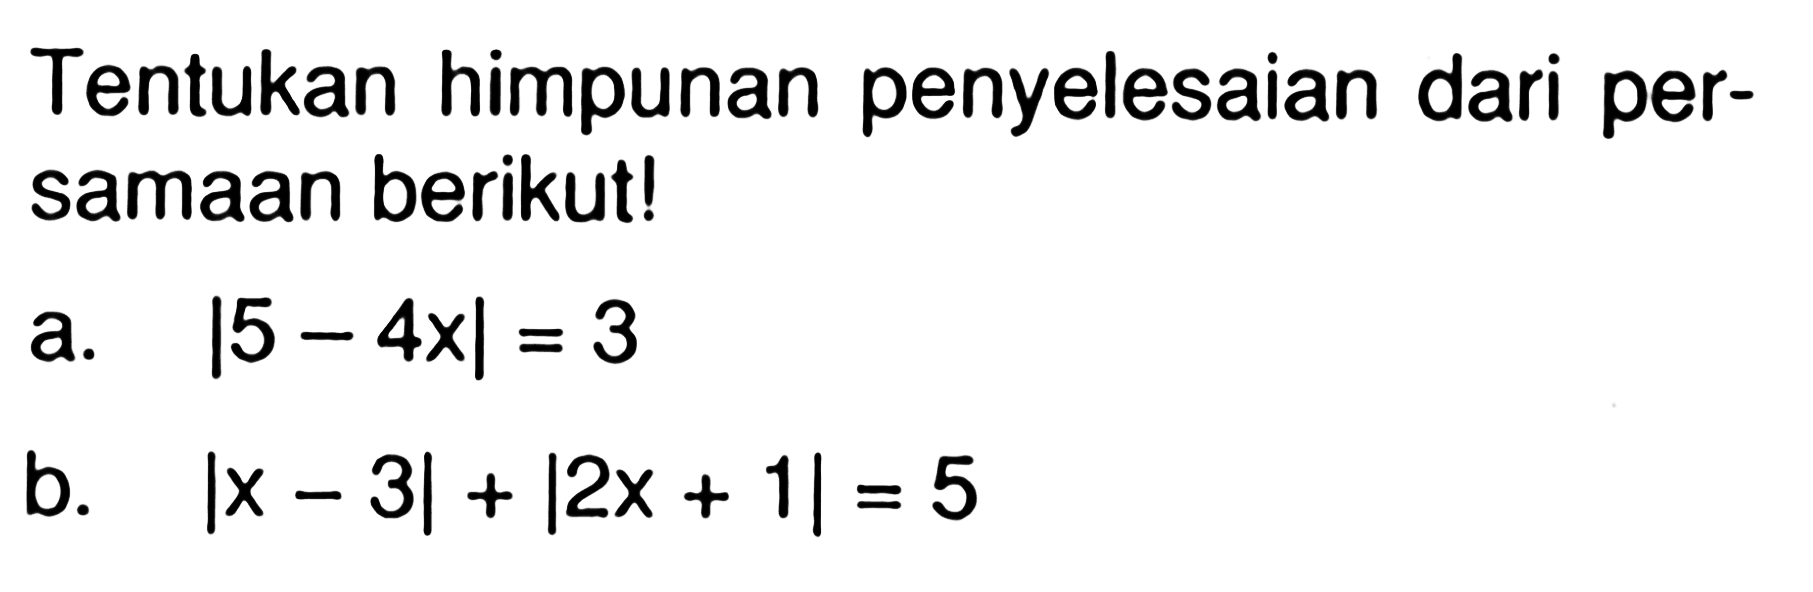 Tentukan himpunan penyelesaian dari per-samaan berikut! a. |5-4x|=3 b. |x-3|+|2x+1|=5